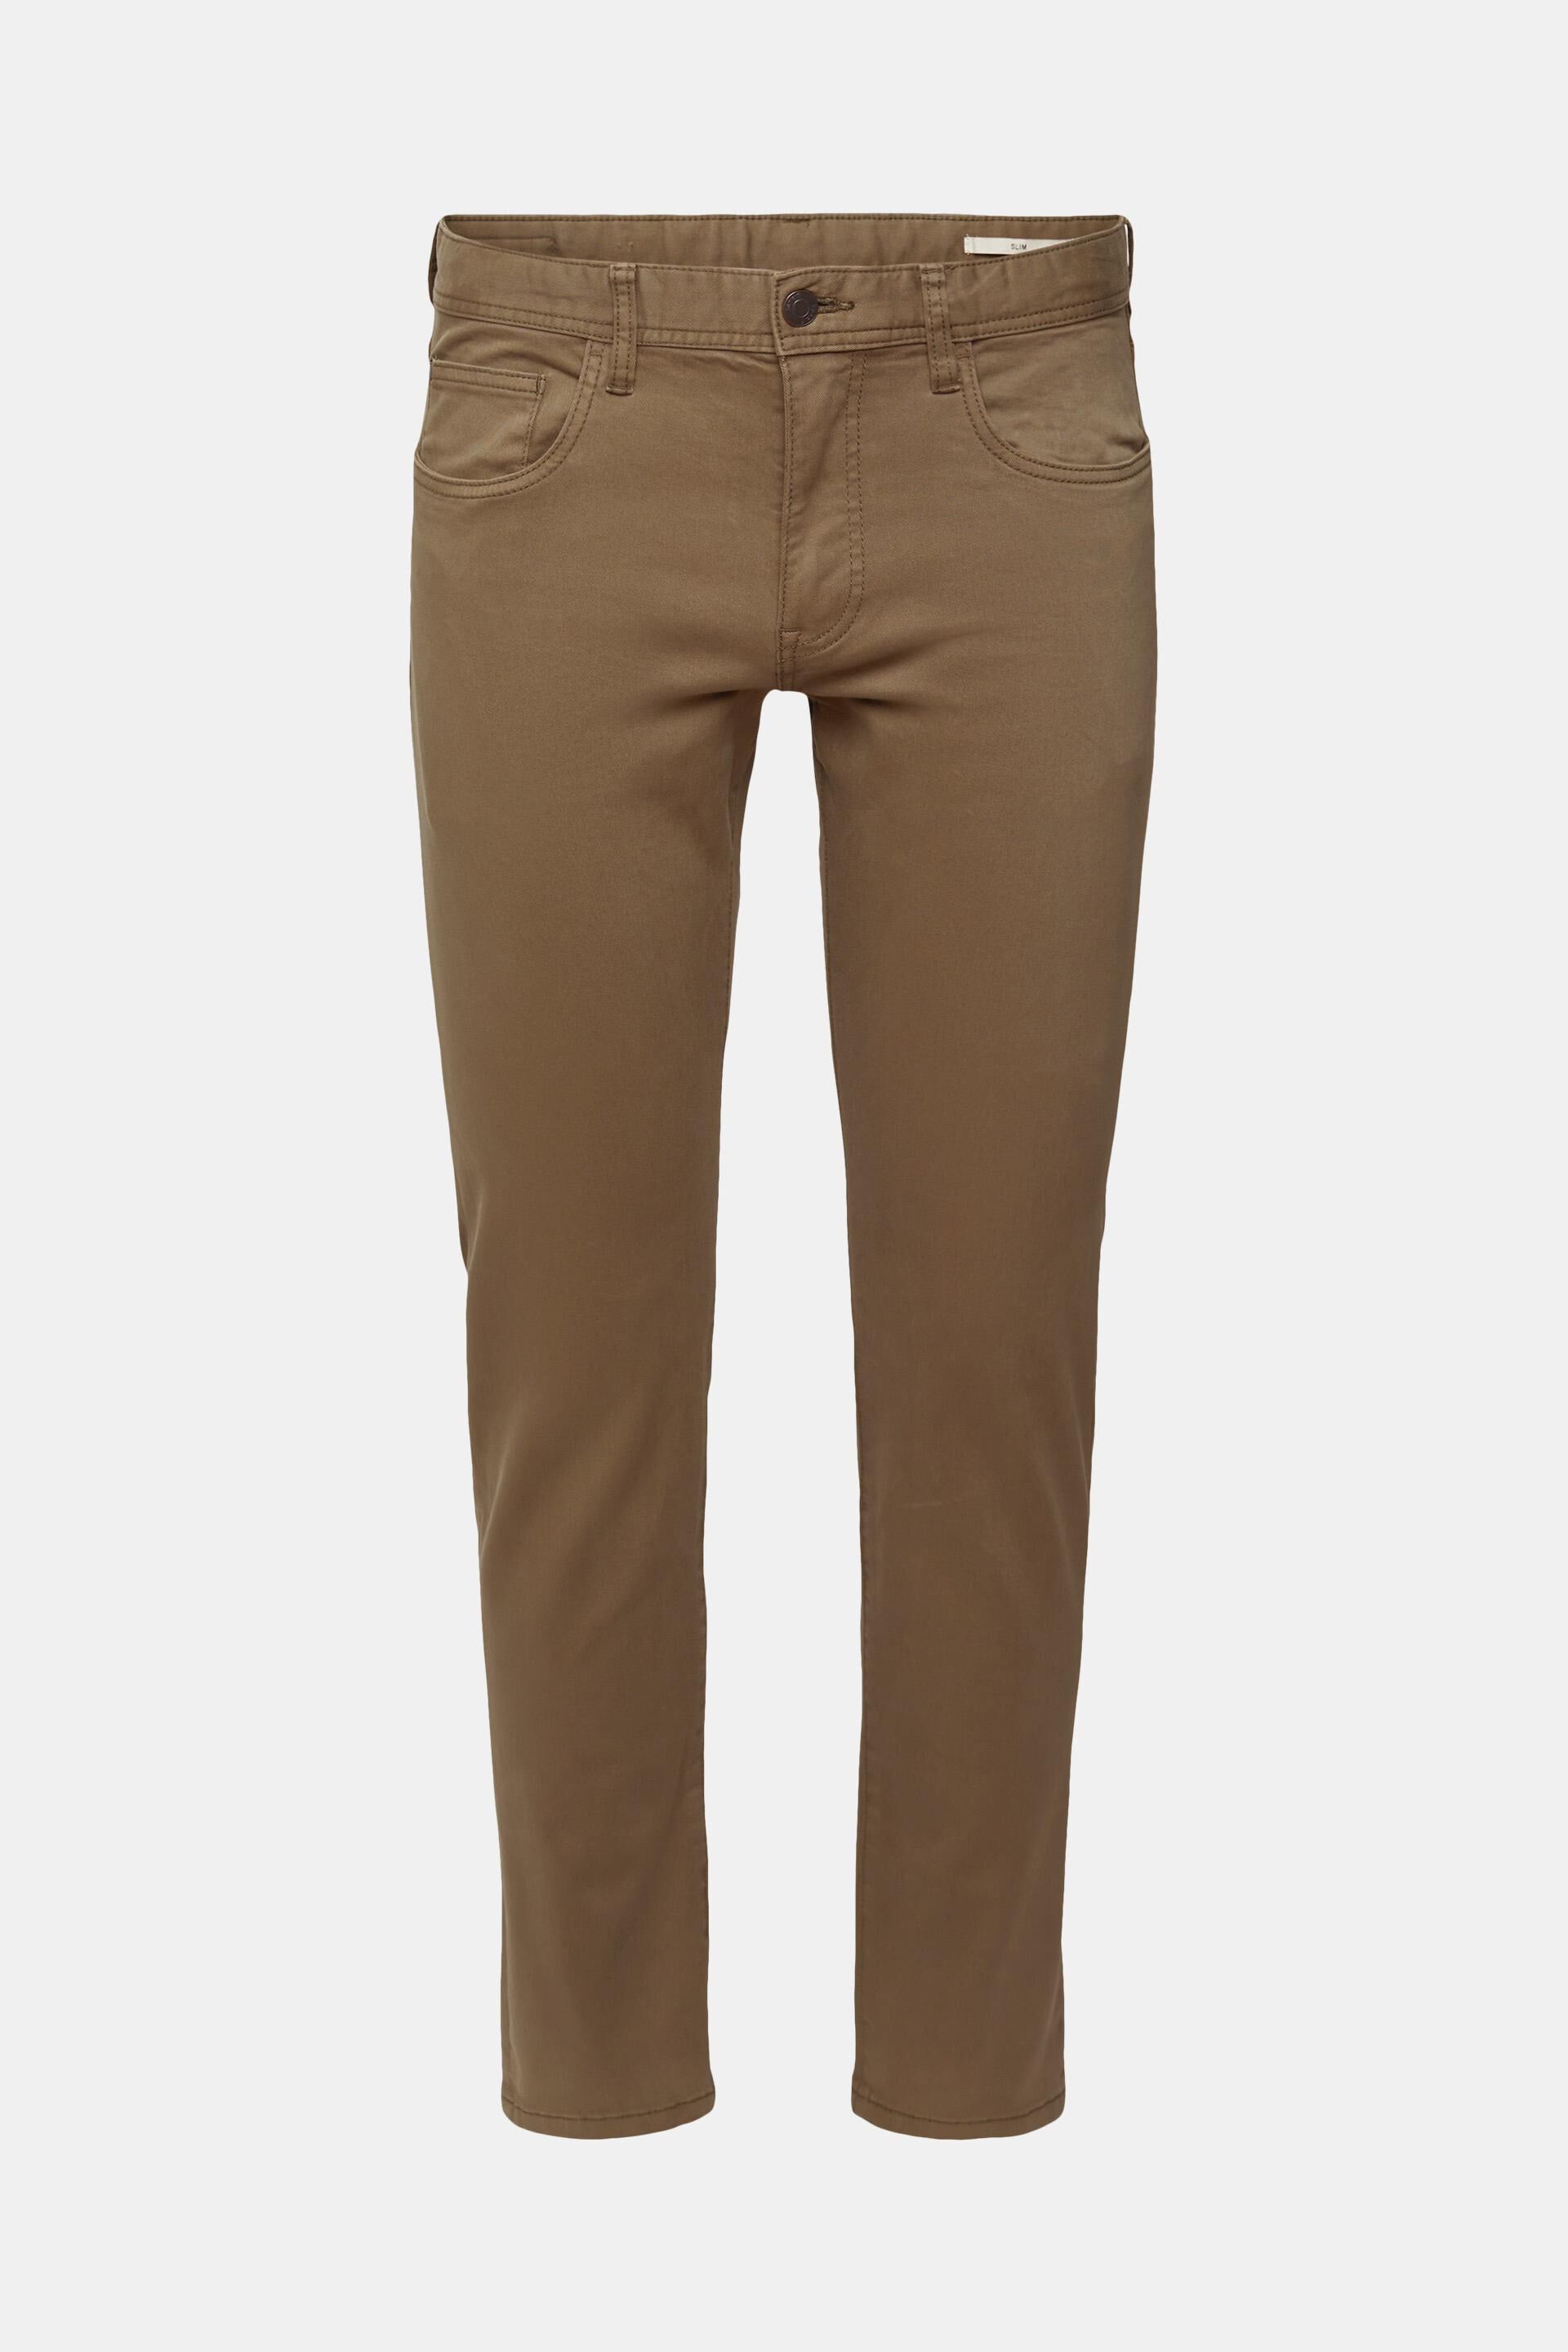 Mode Broeken 3/4-broeken Esprit 3\/4-broek bruin casual uitstraling 